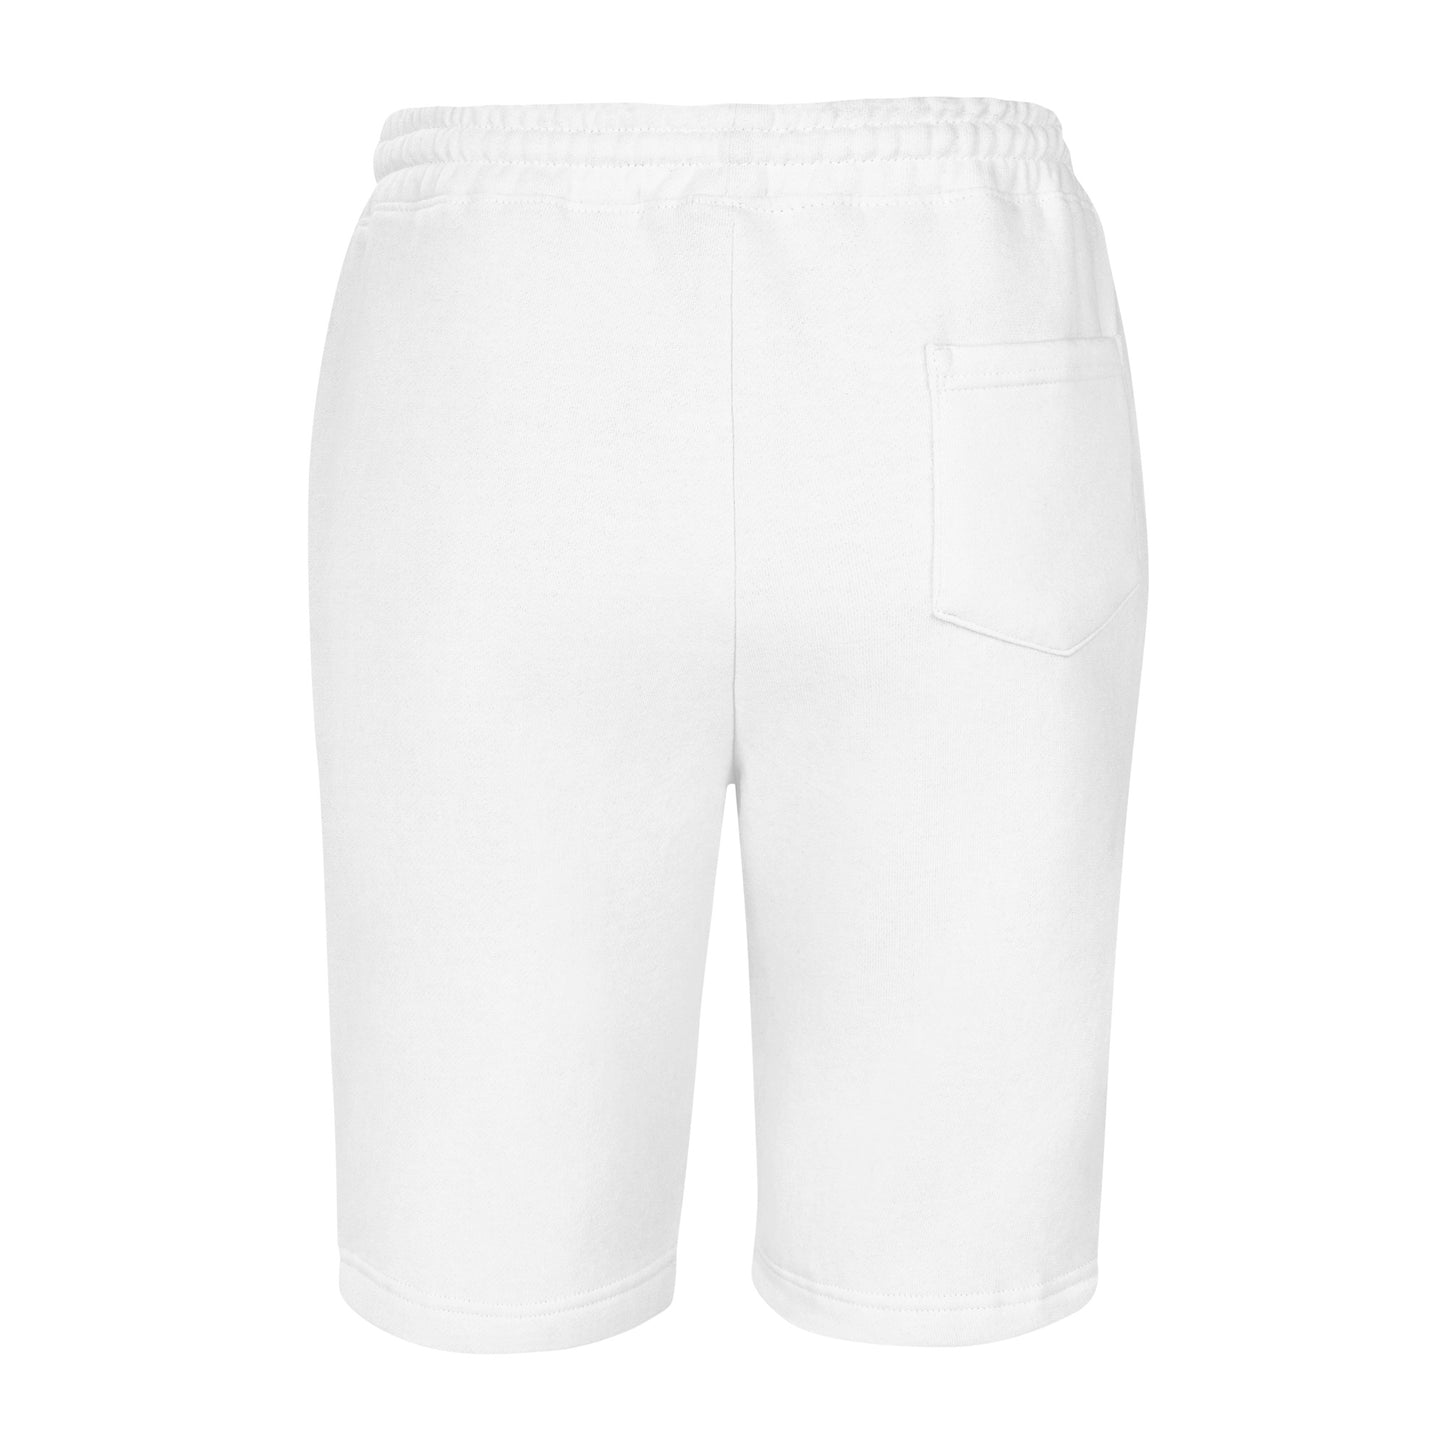 P.O.Y Shorts Men's fleece shorts